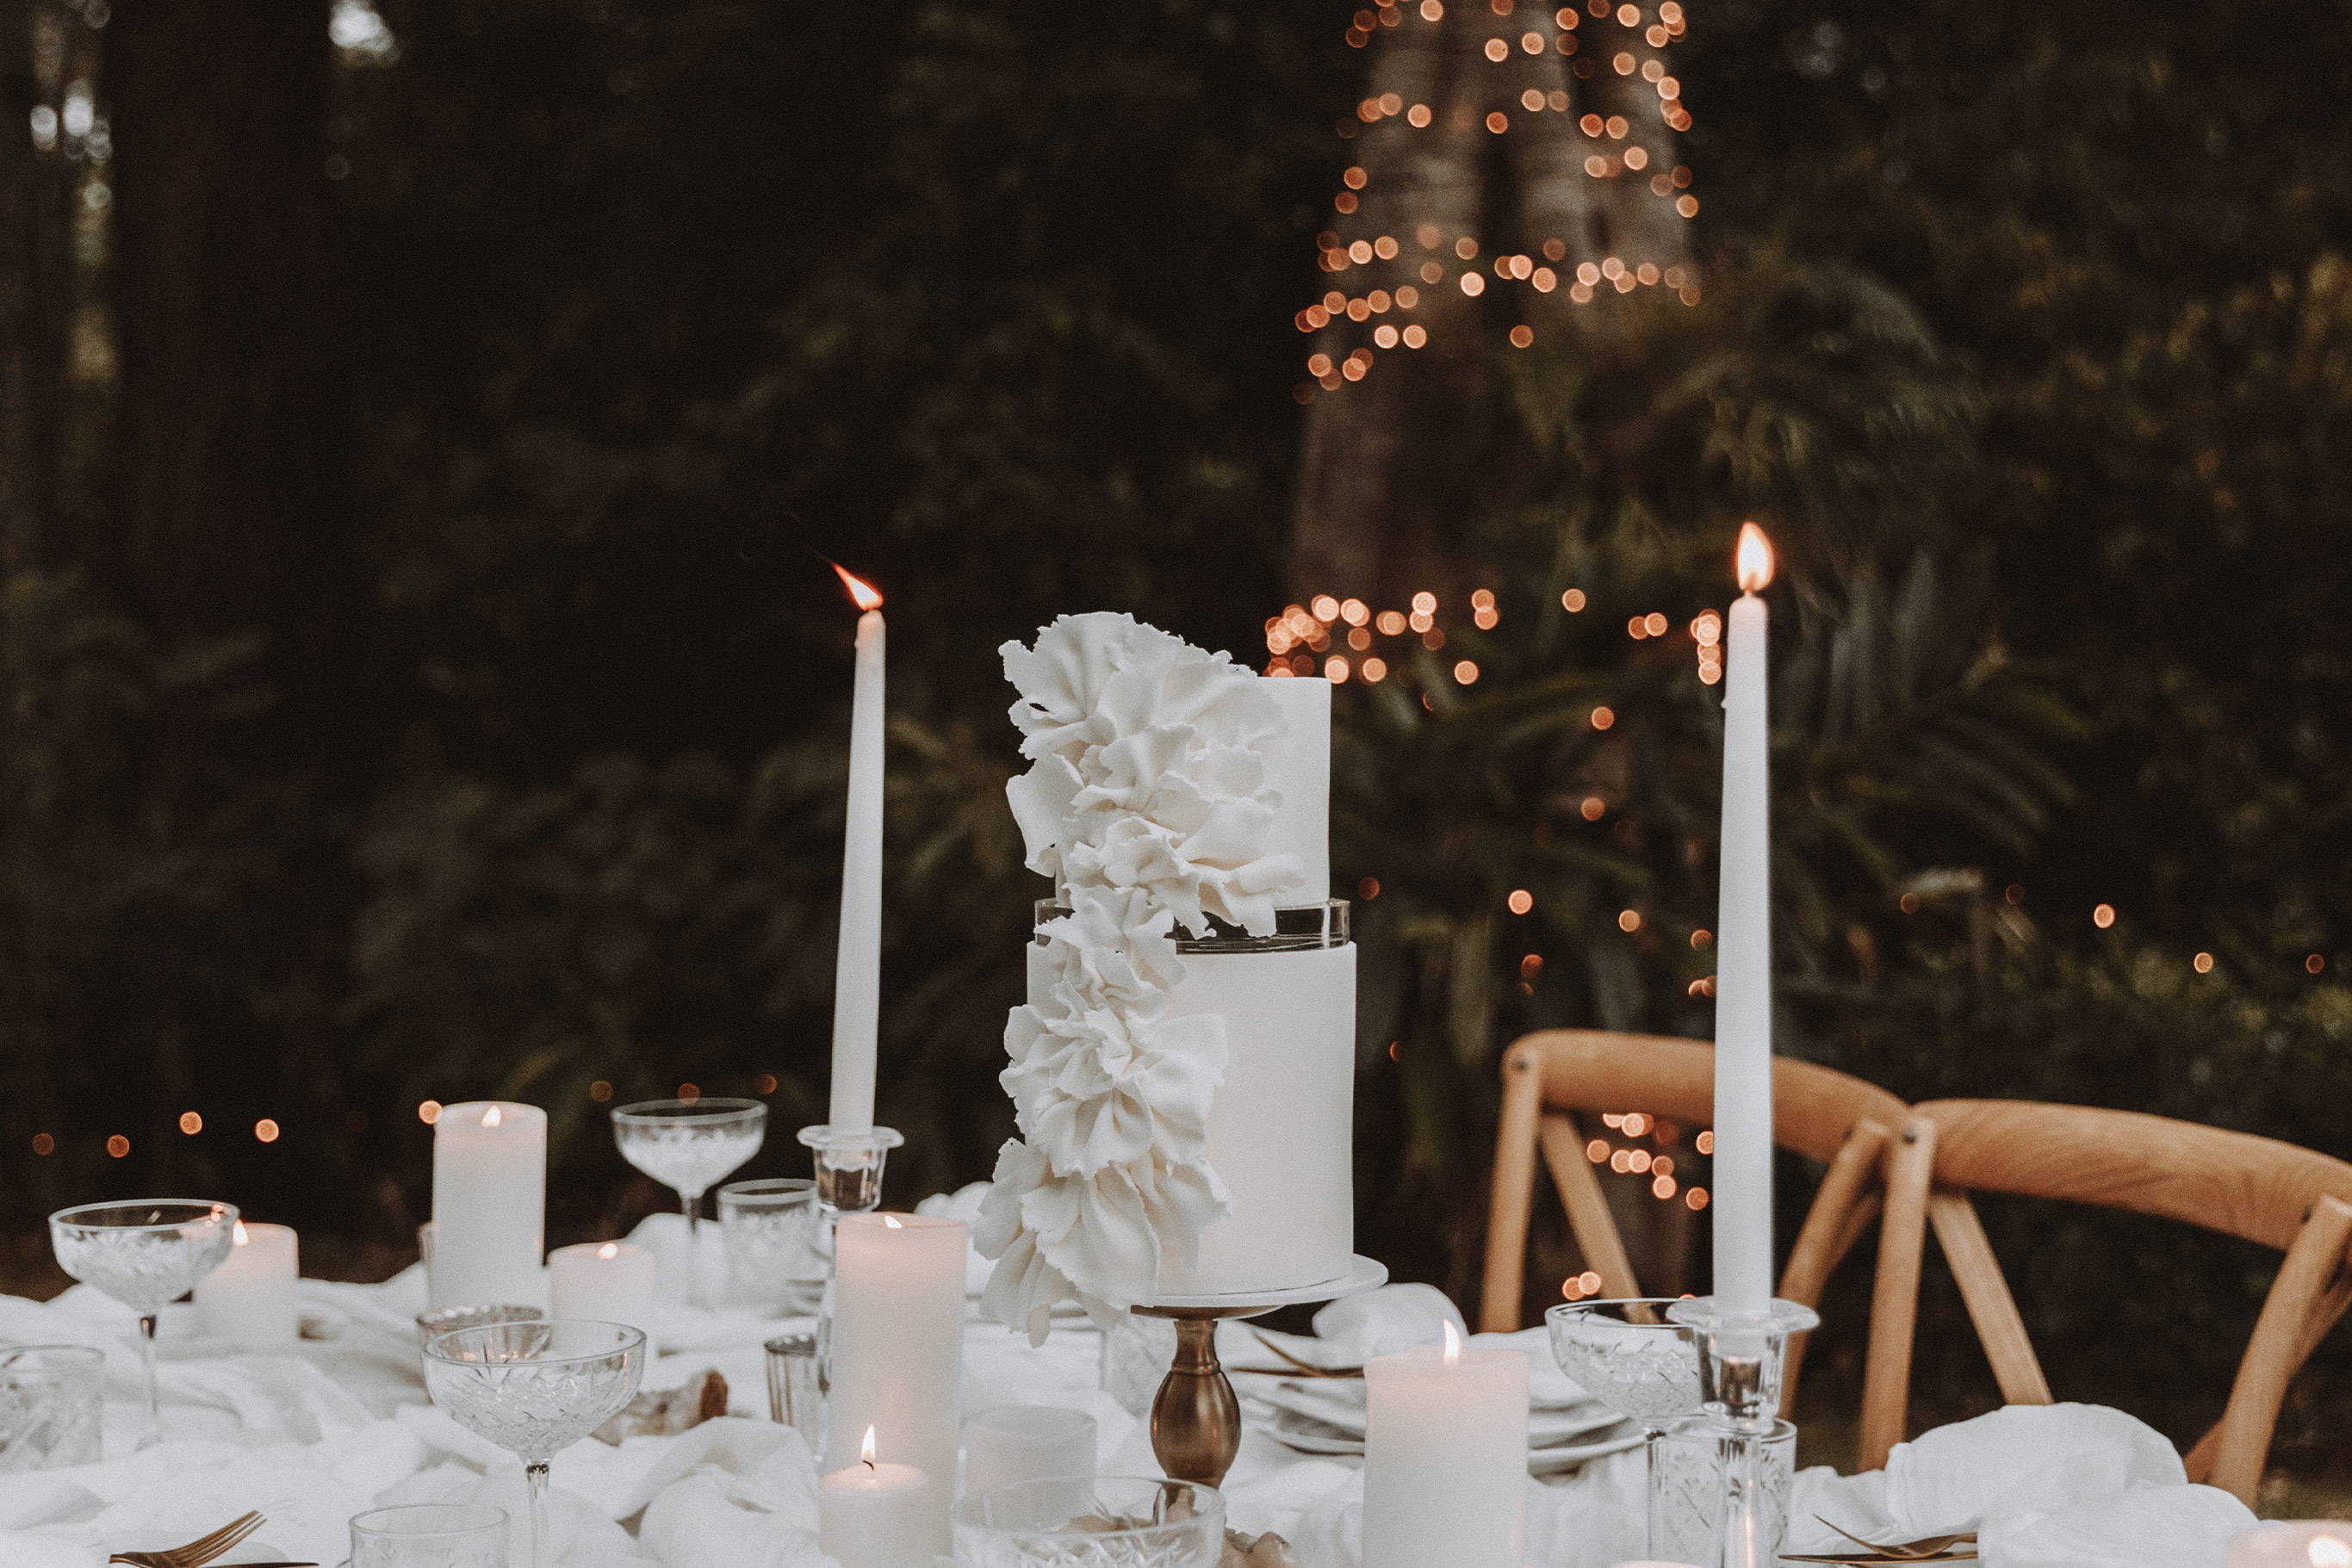 Gâteau de mariage blanc avec des fleurs blanches et des bougies sur la table de mariage.